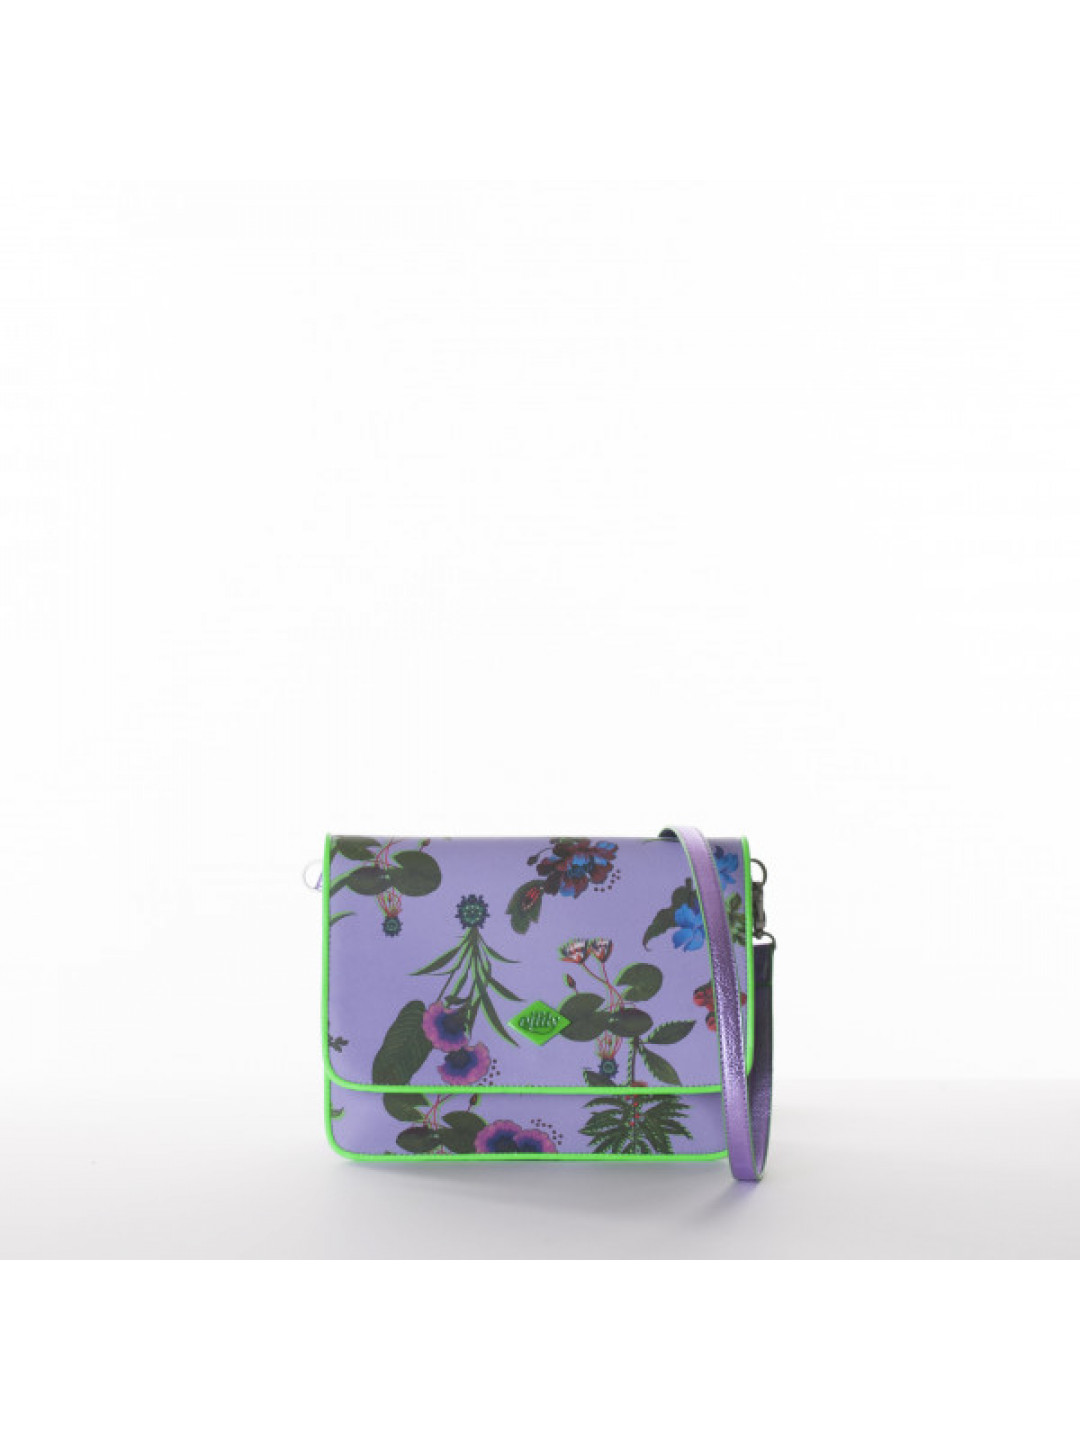 Romantická dámská společenská kabelka Oilily flower fialová